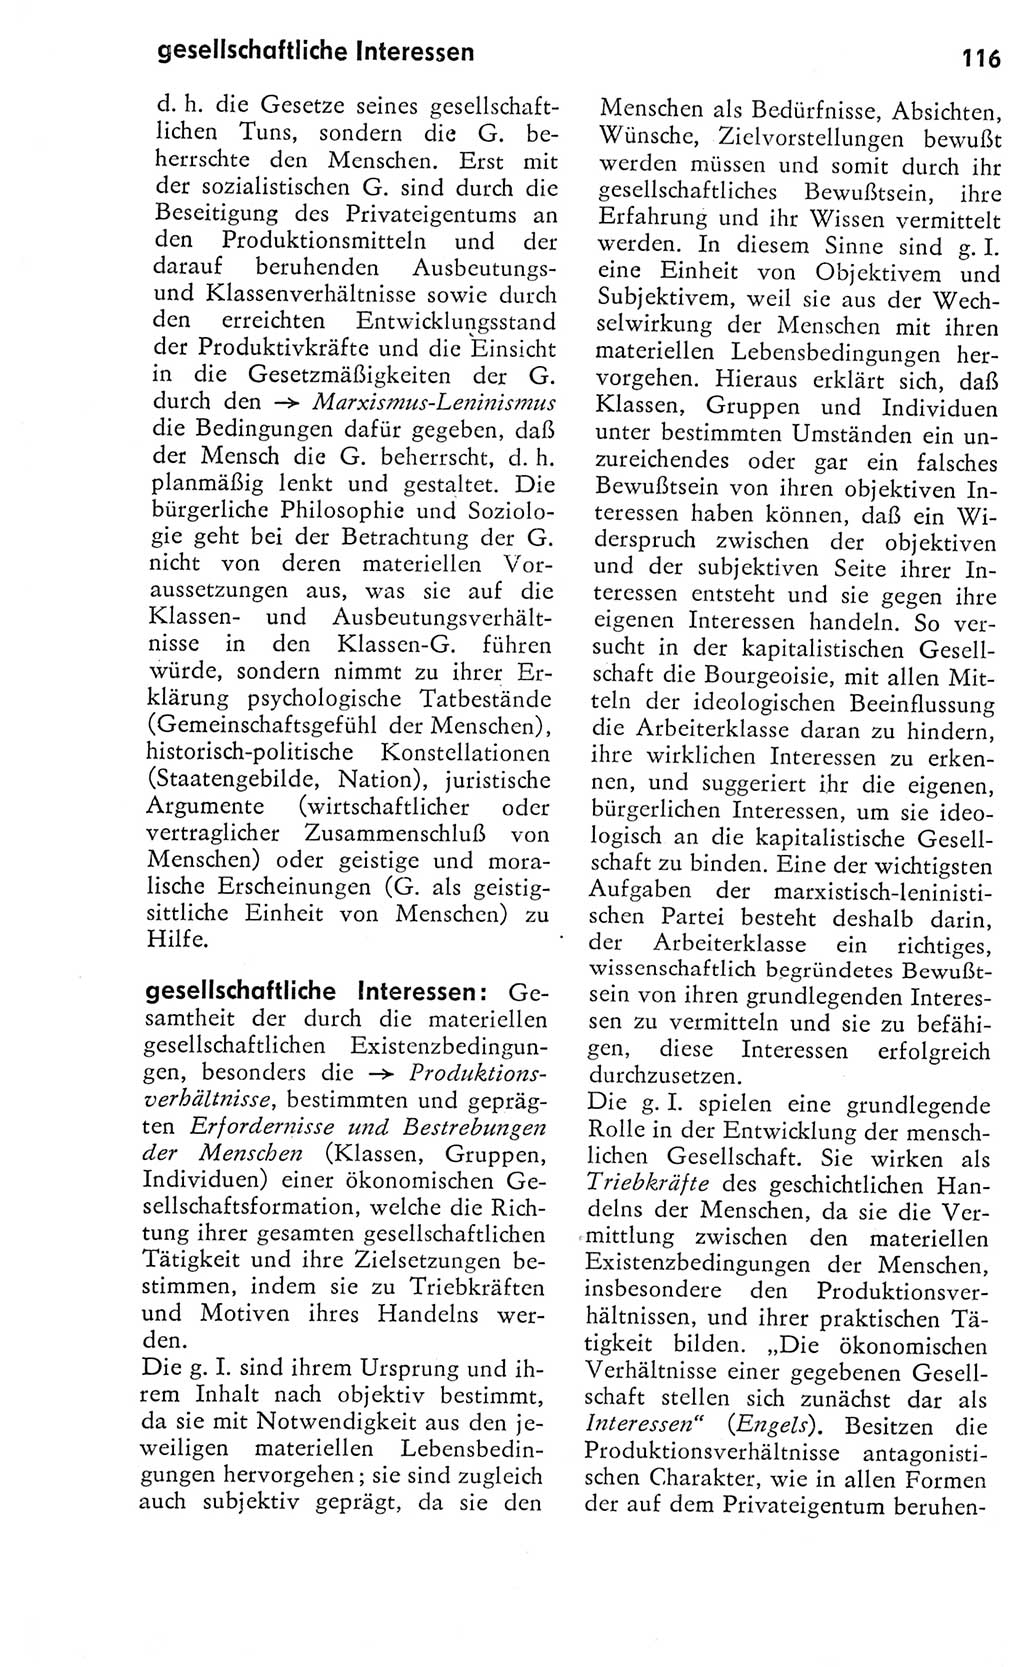 Kleines Wörterbuch der marxistisch-leninistischen Philosophie [Deutsche Demokratische Republik (DDR)] 1975, Seite 116 (Kl. Wb. ML Phil. DDR 1975, S. 116)